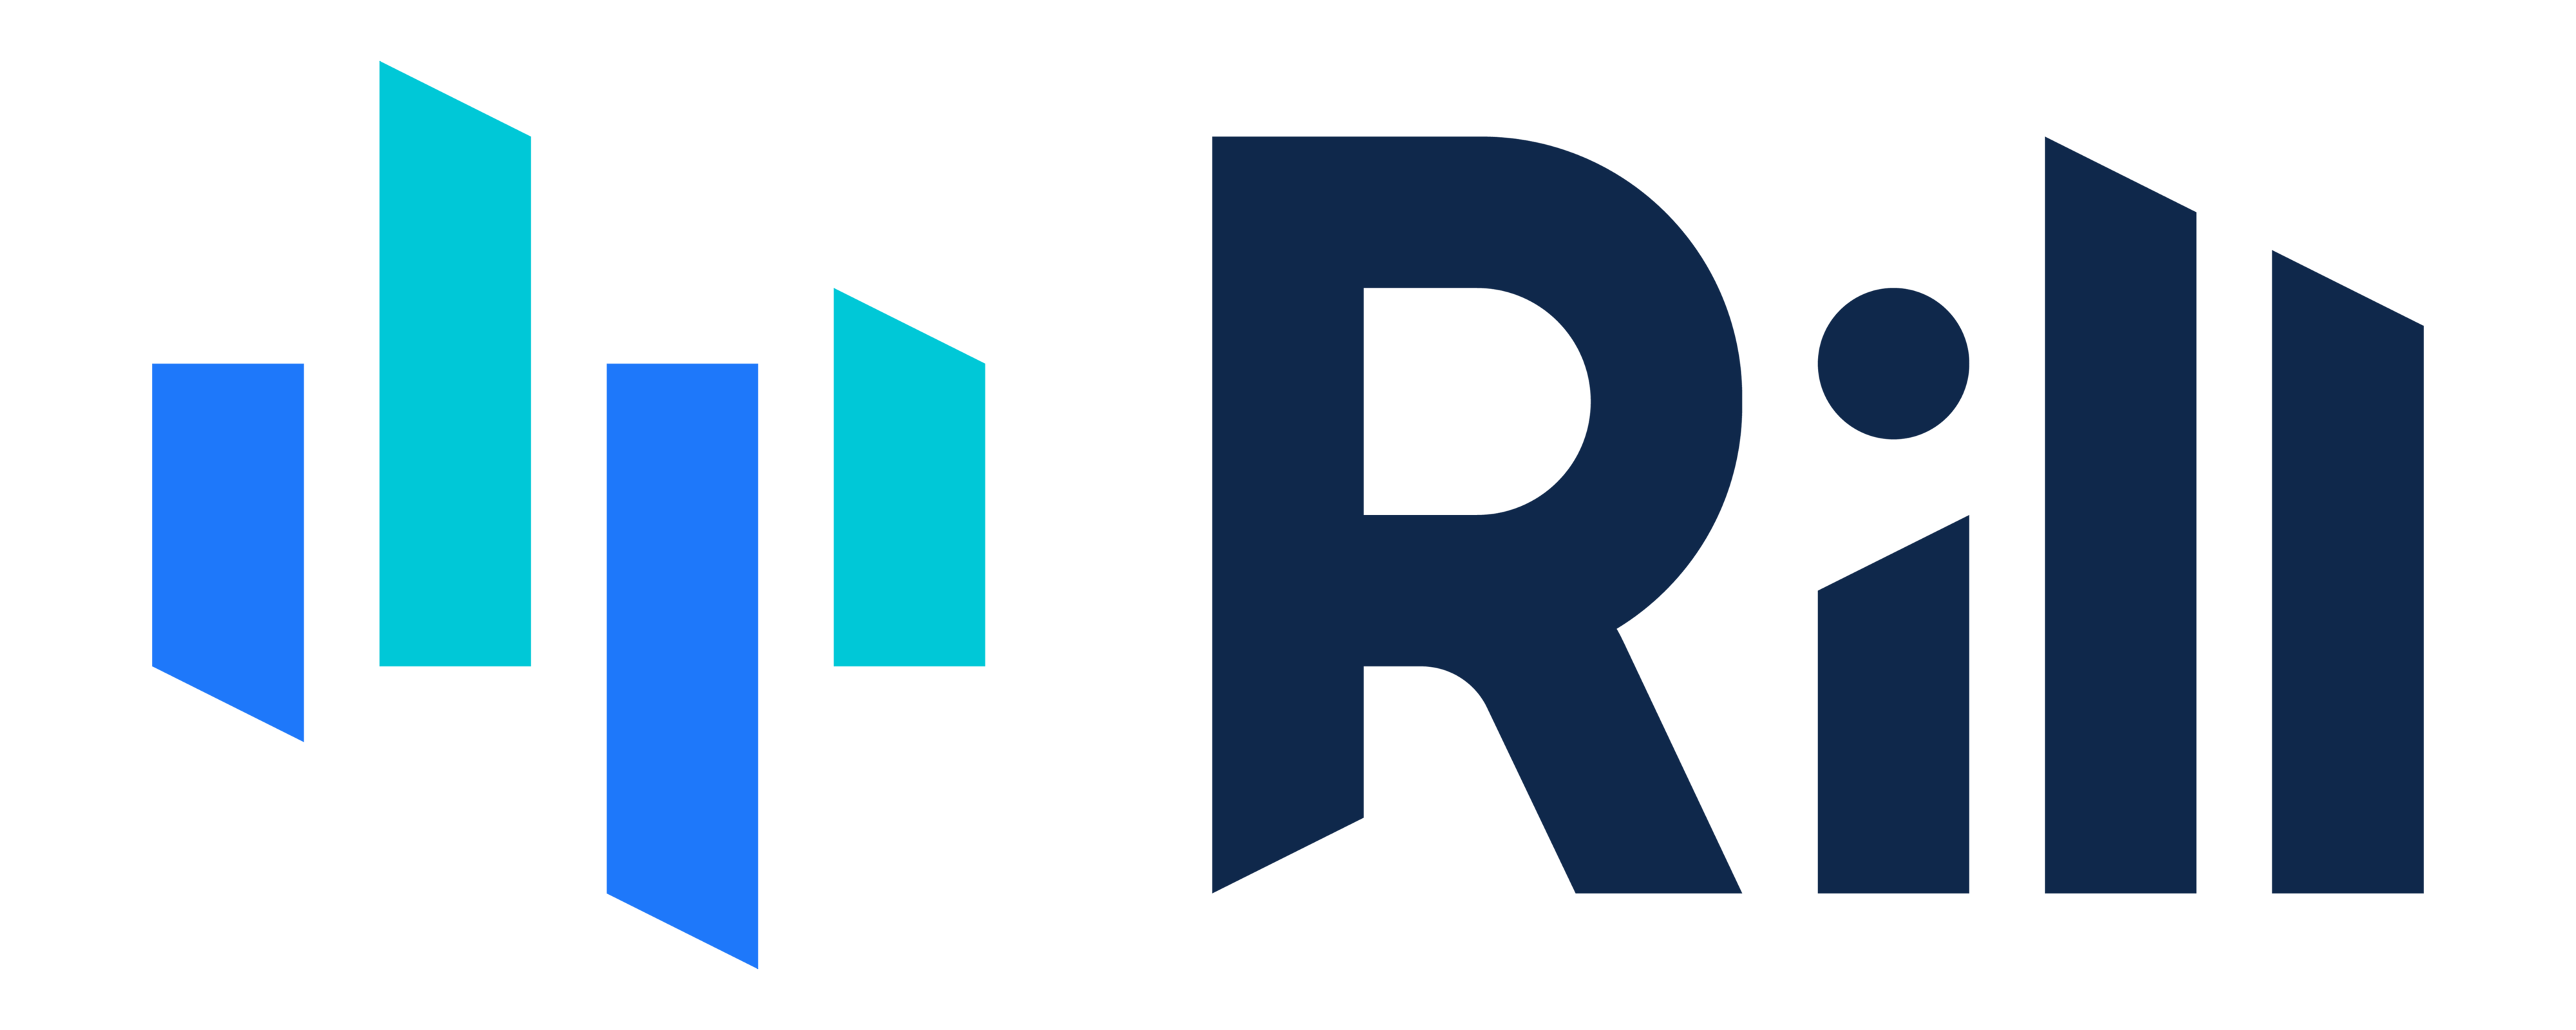 Rill Data logo